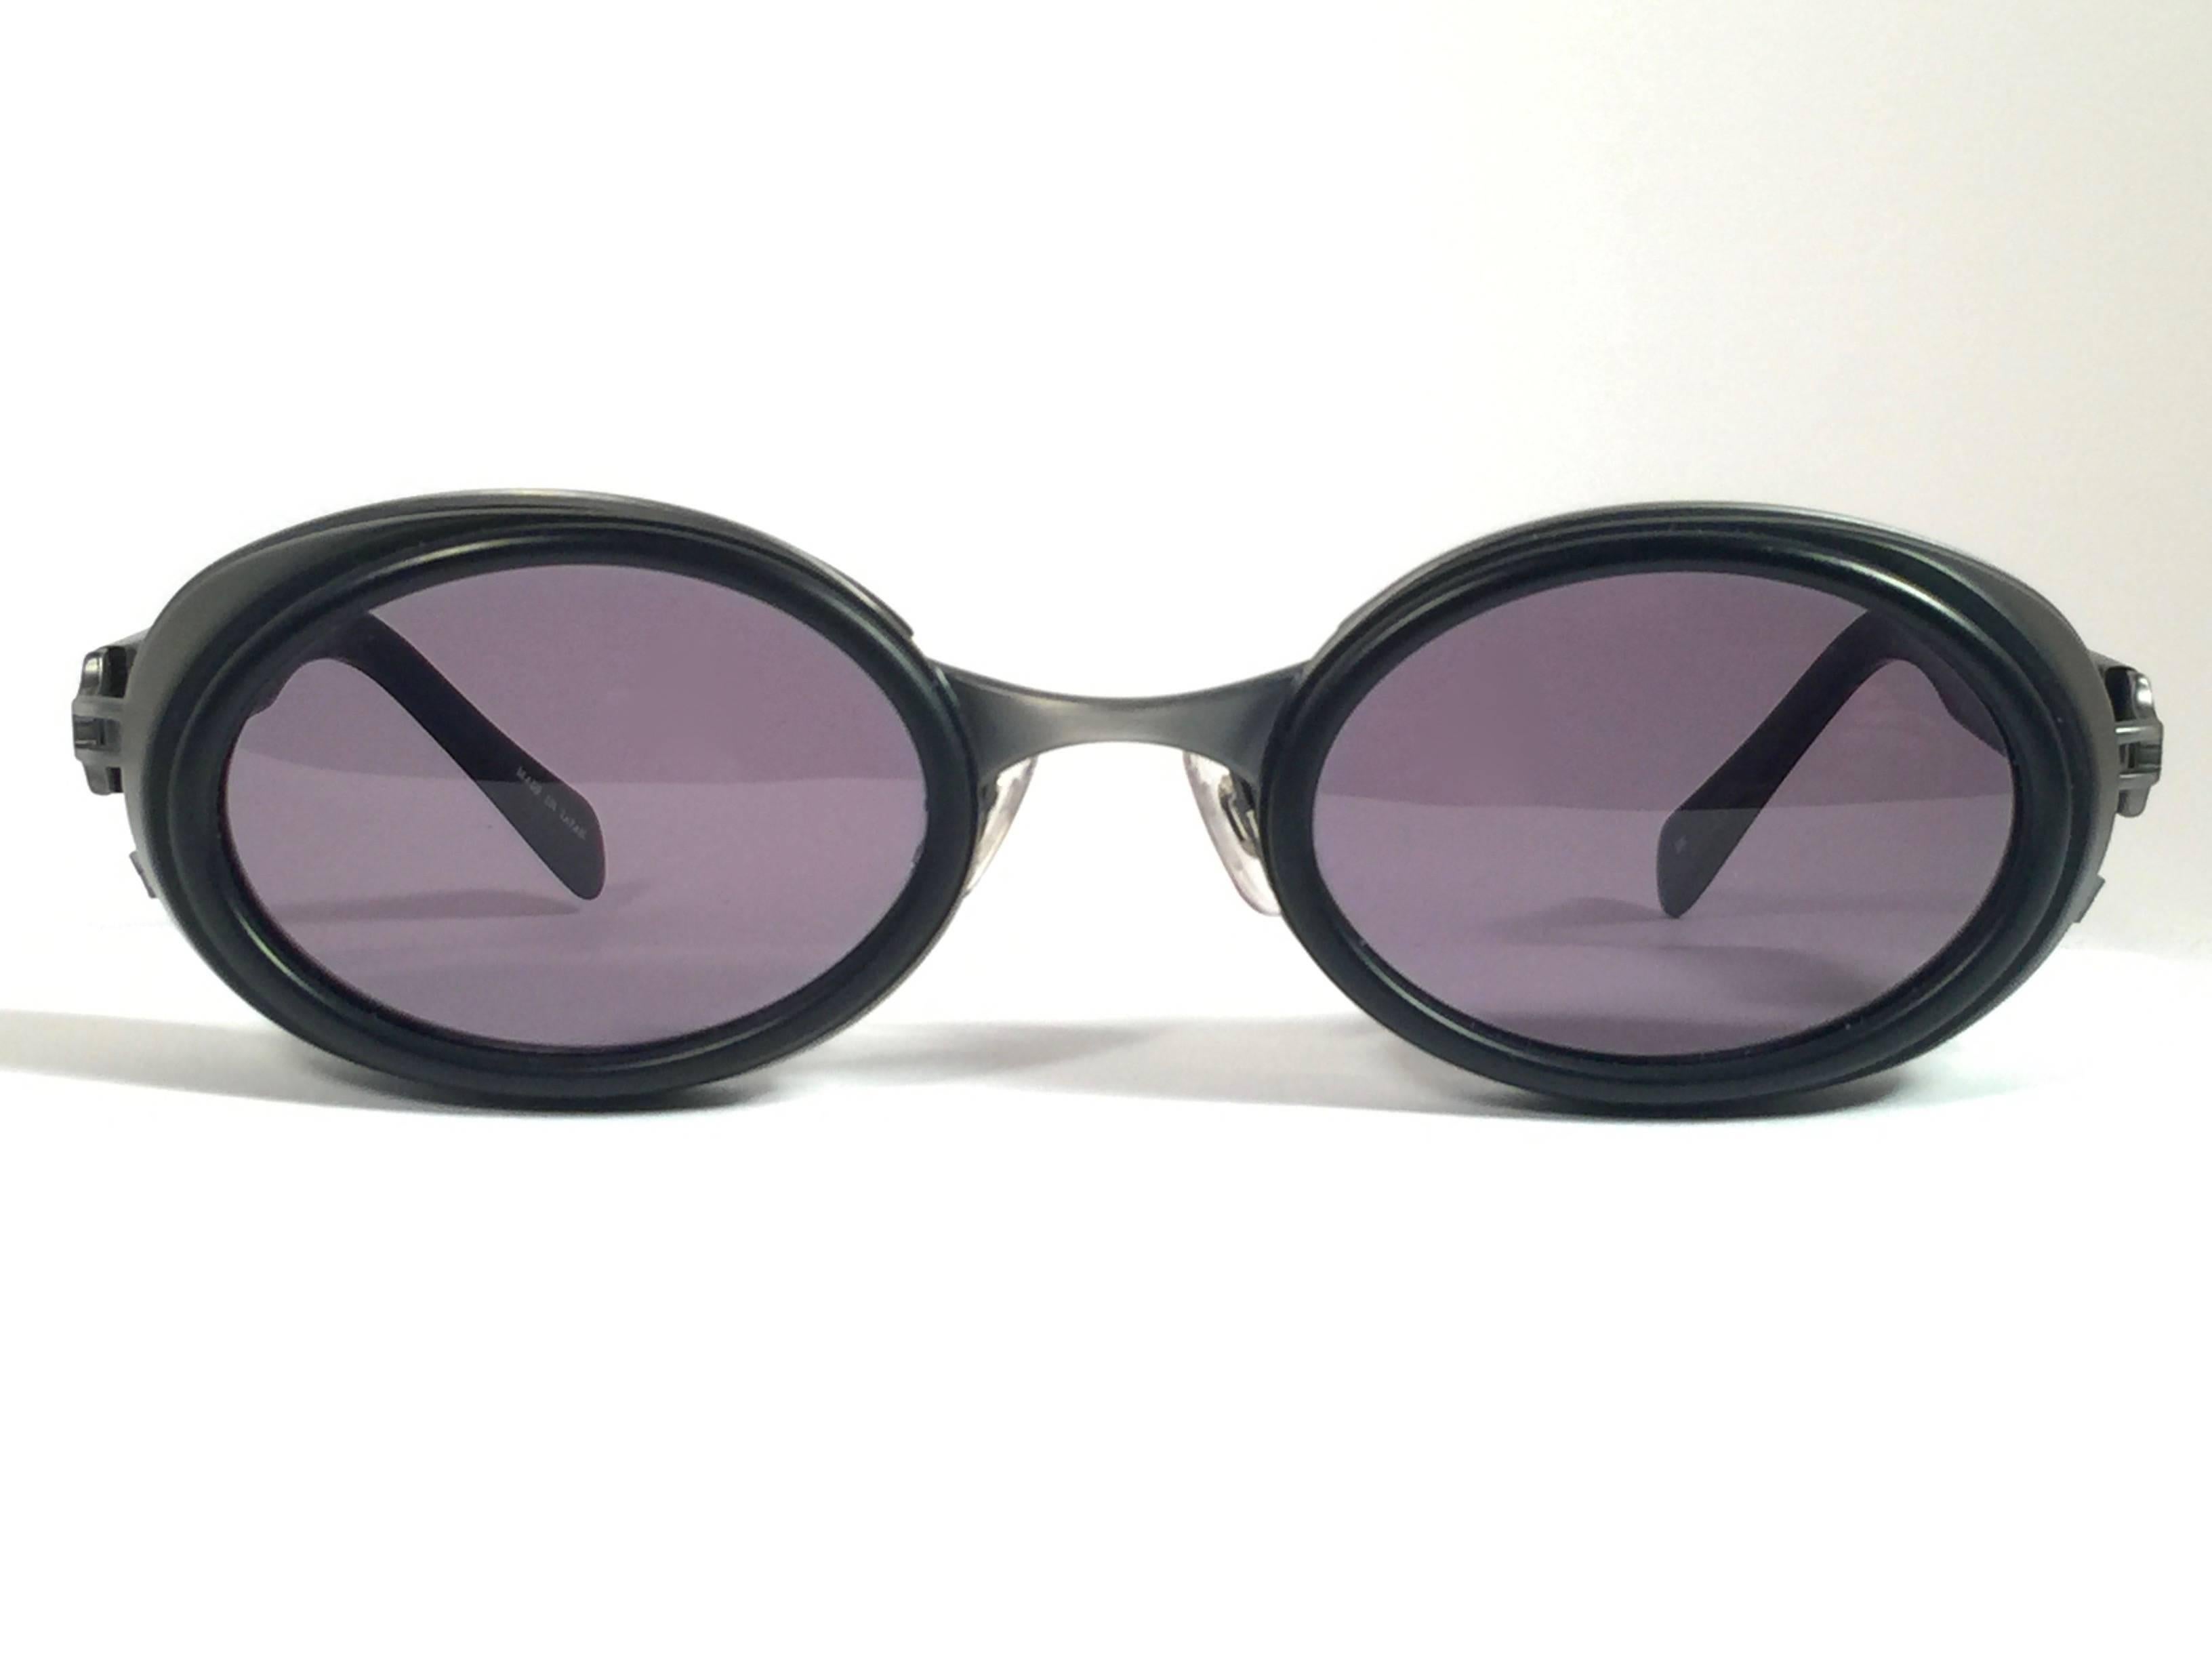 Die Kultmarke Matsuda hat diese ultra-schicke ovale Sonnenbrille in mattem Schwarz mit silbernen Akzenten entworfen. 

Makellose graue G15-Gläser.

Hervorragende Qualität und Design. 

Neu, nie getragen oder ausgestellt. Hergestellt in